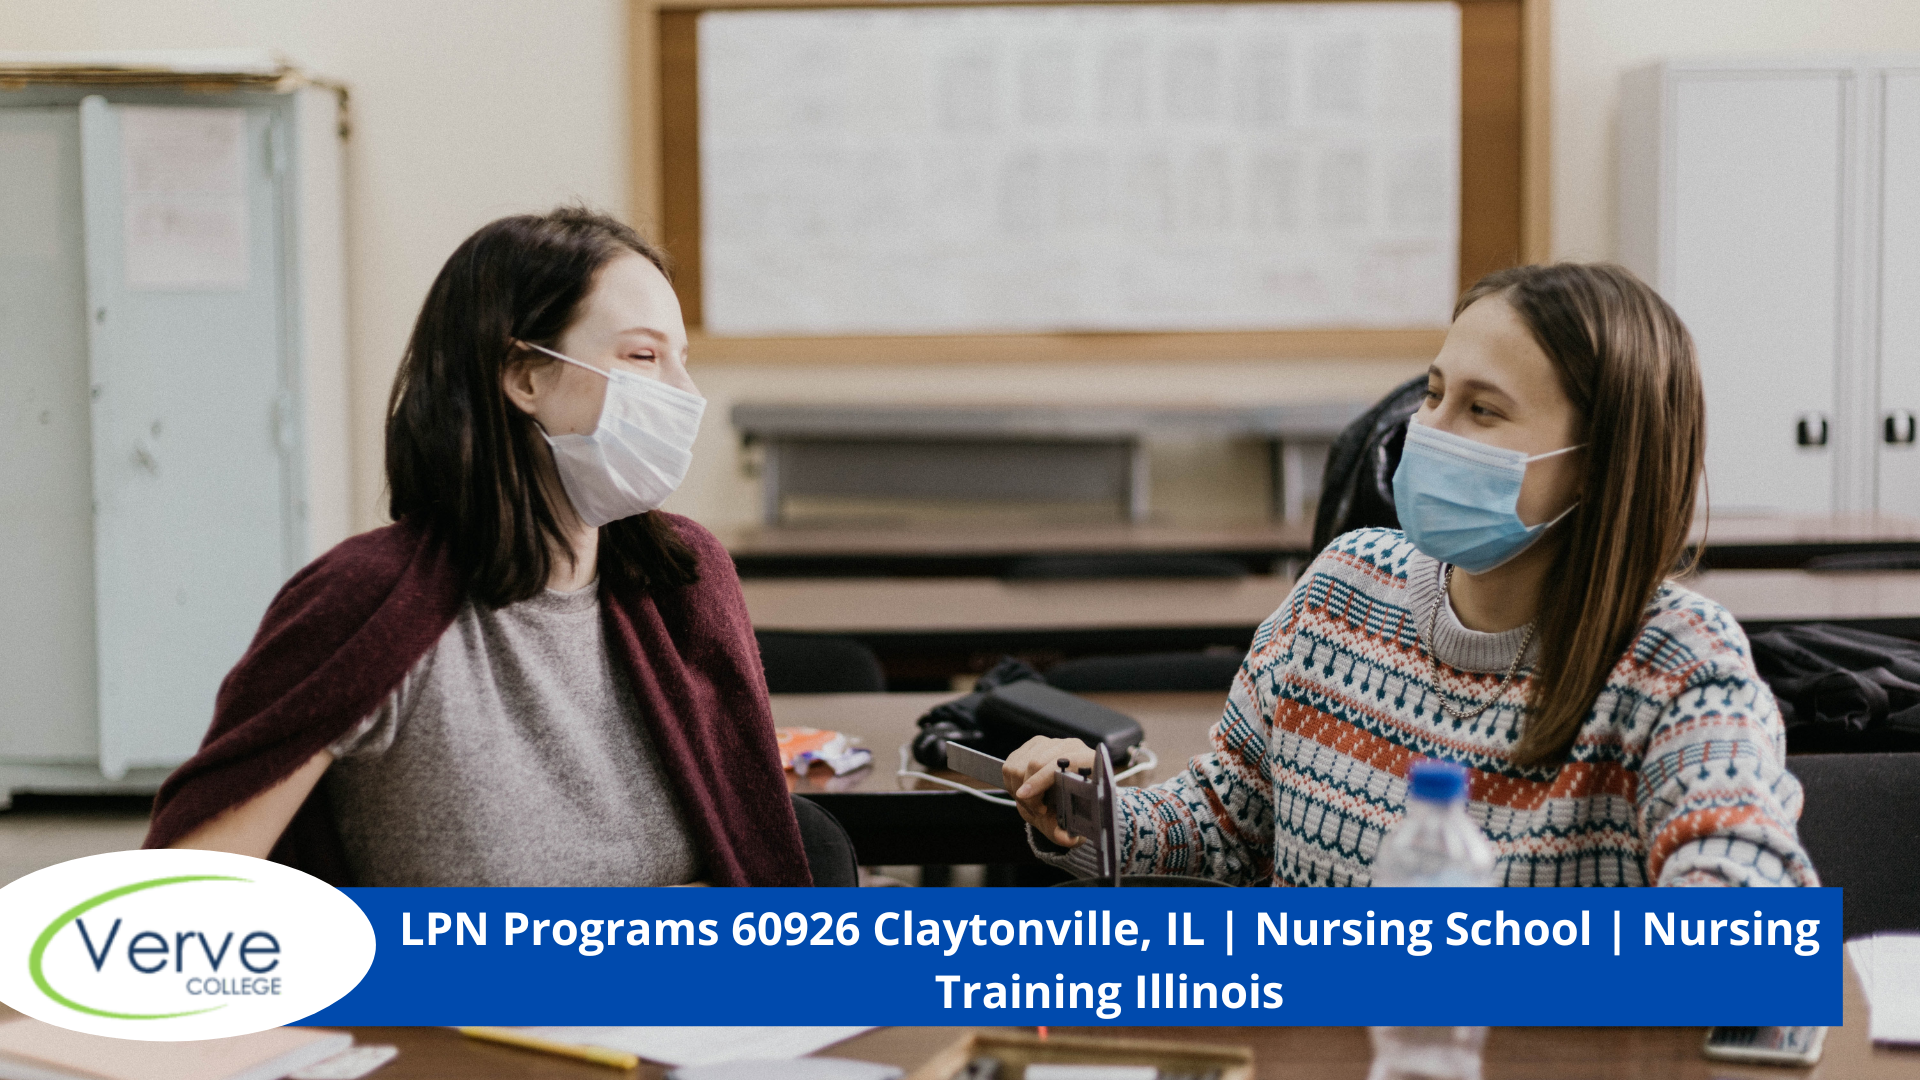 LPN Programs 60926 Claytonville, IL | Nursing School | Nursing Training Illinois